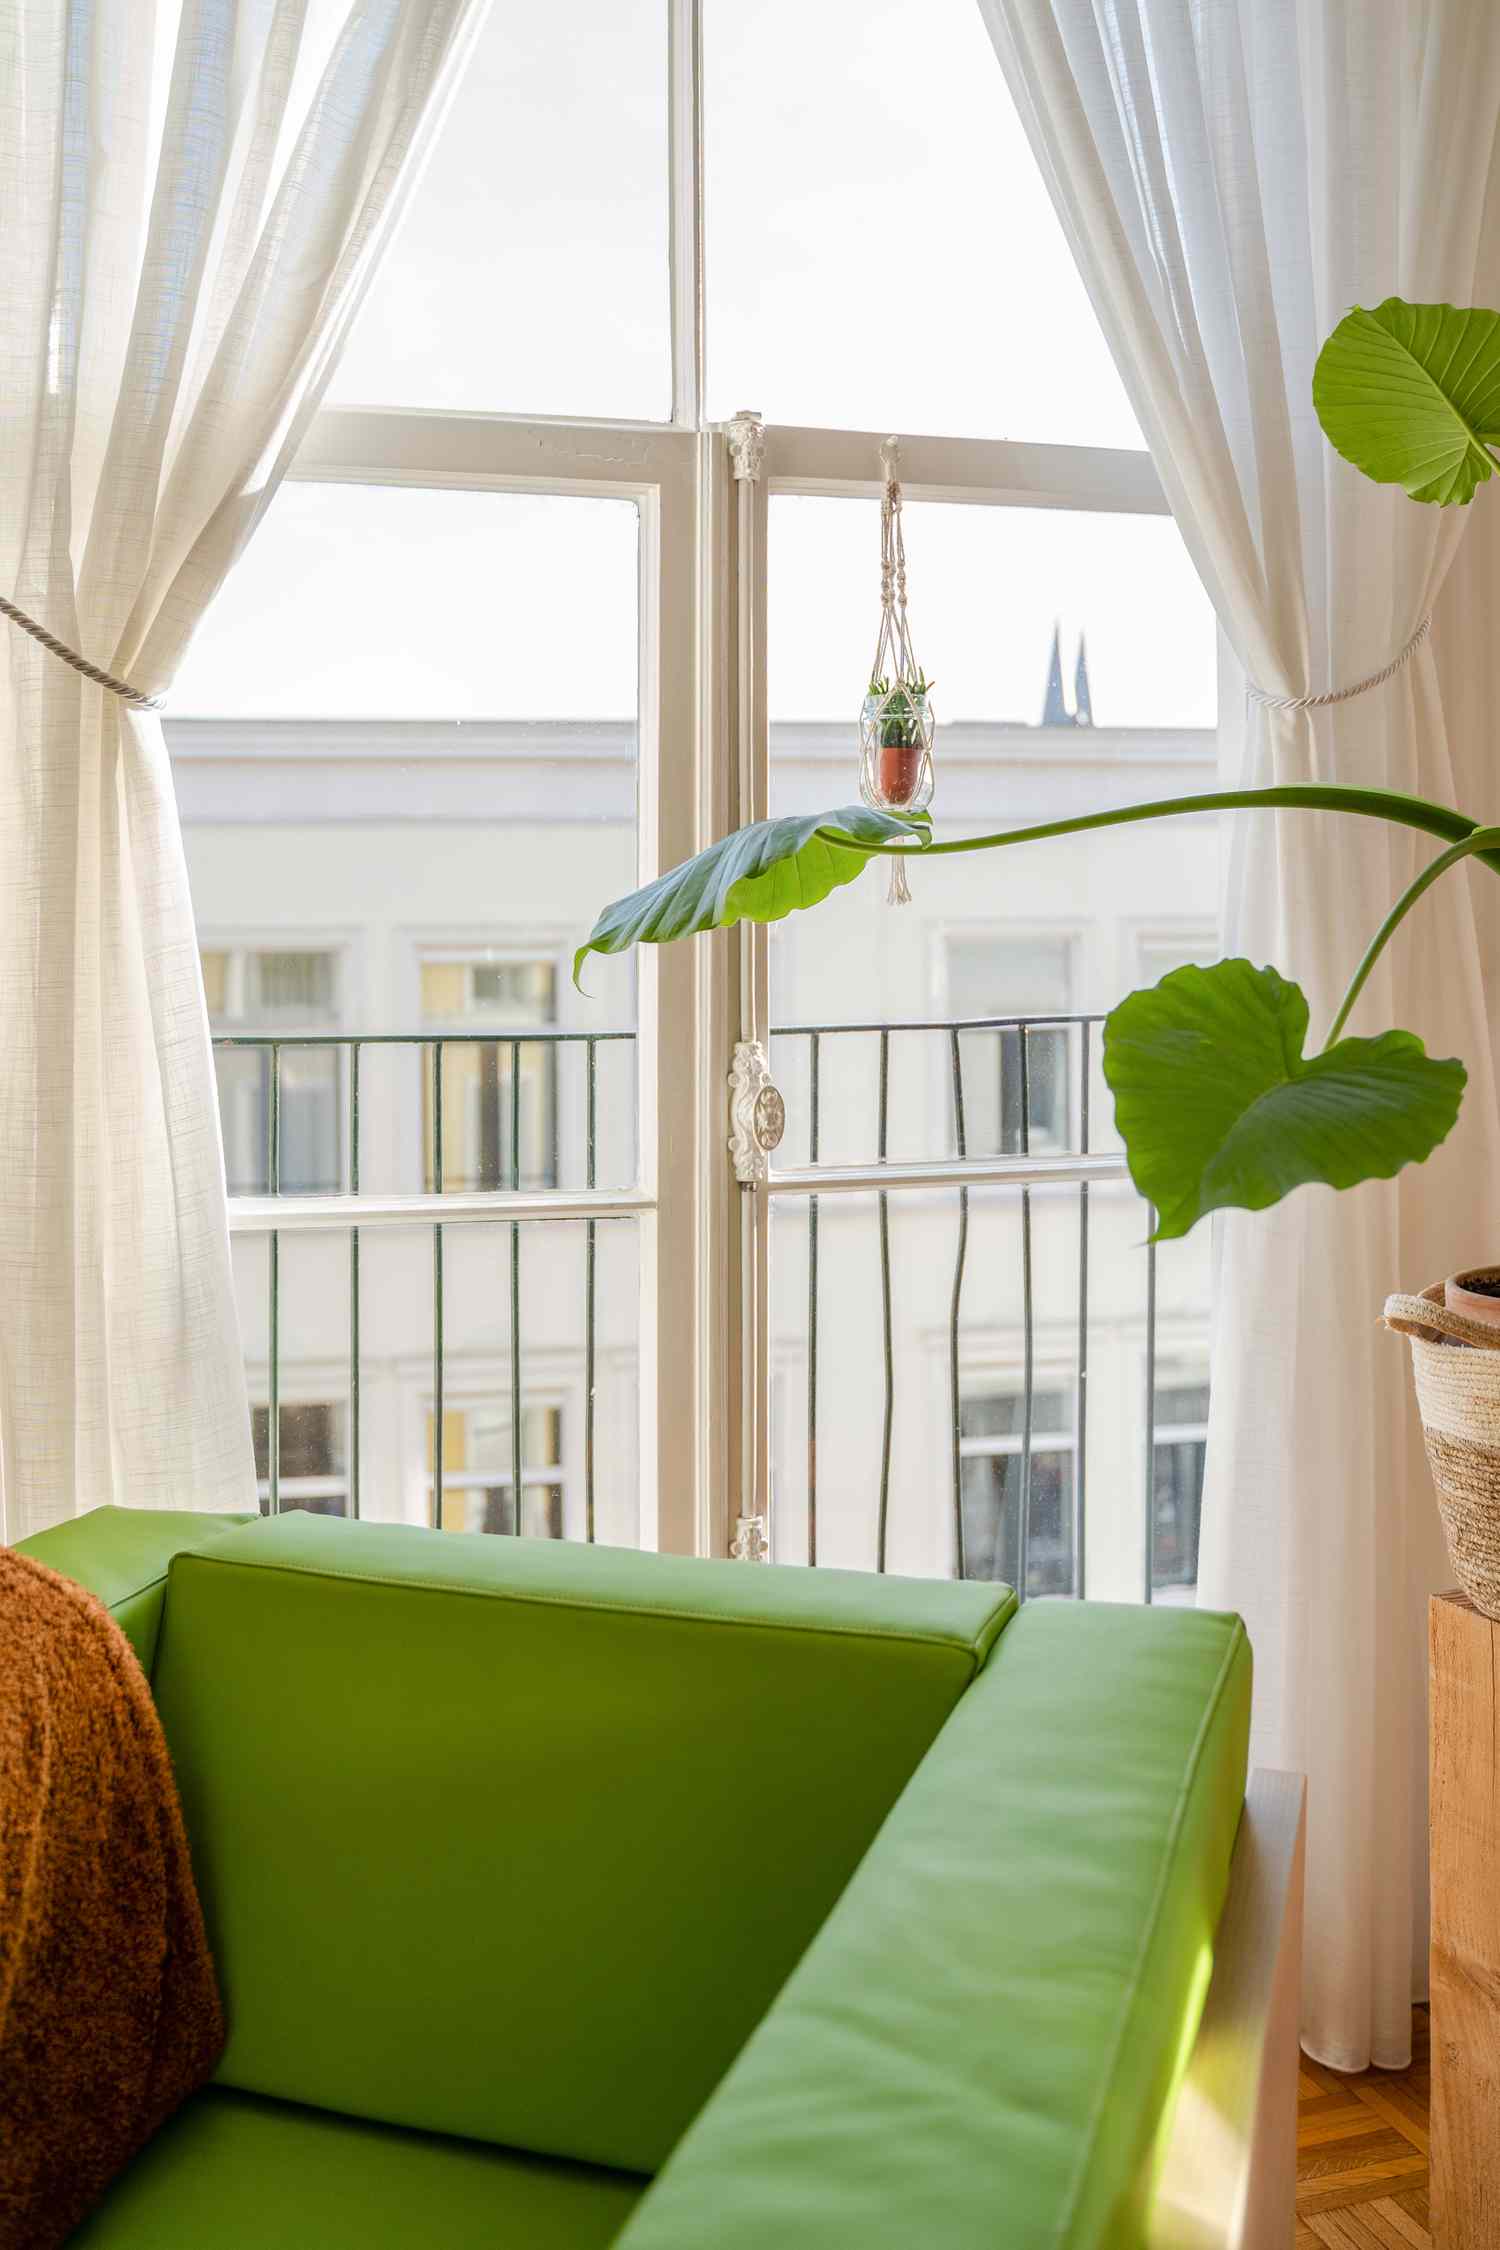 sillón verde y planta verde junto a una ventana con cortinas blancas